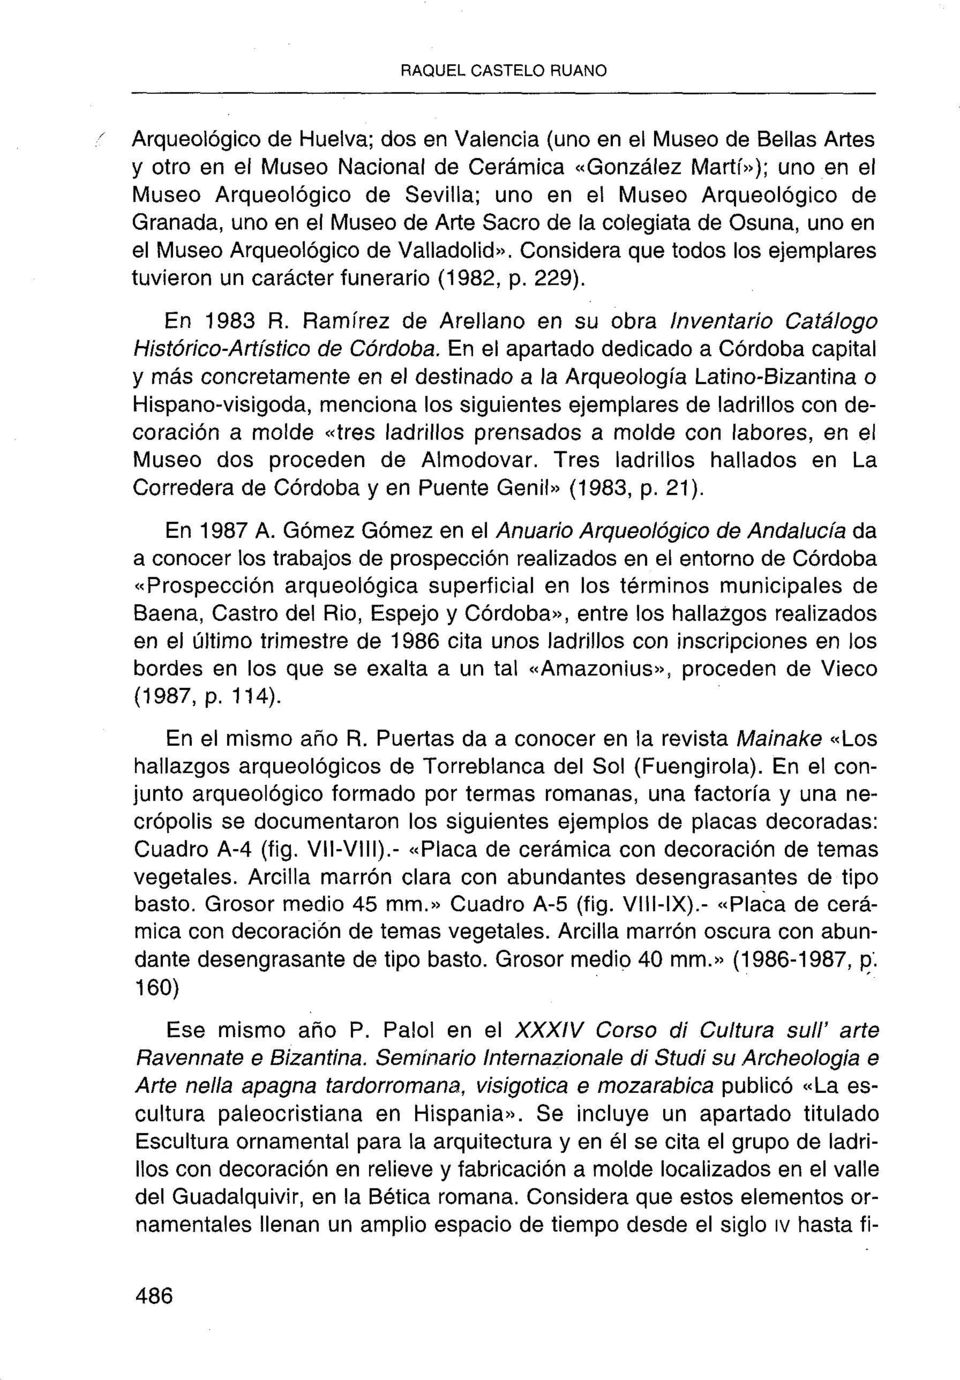 Considera que todos los ejemplares tuvieron un carácter funerario (1982, p. 229). En 1983 R. Ramírez de Arellano en su obra Inventario Catálogo Histórico-Artístico de Córdoba.